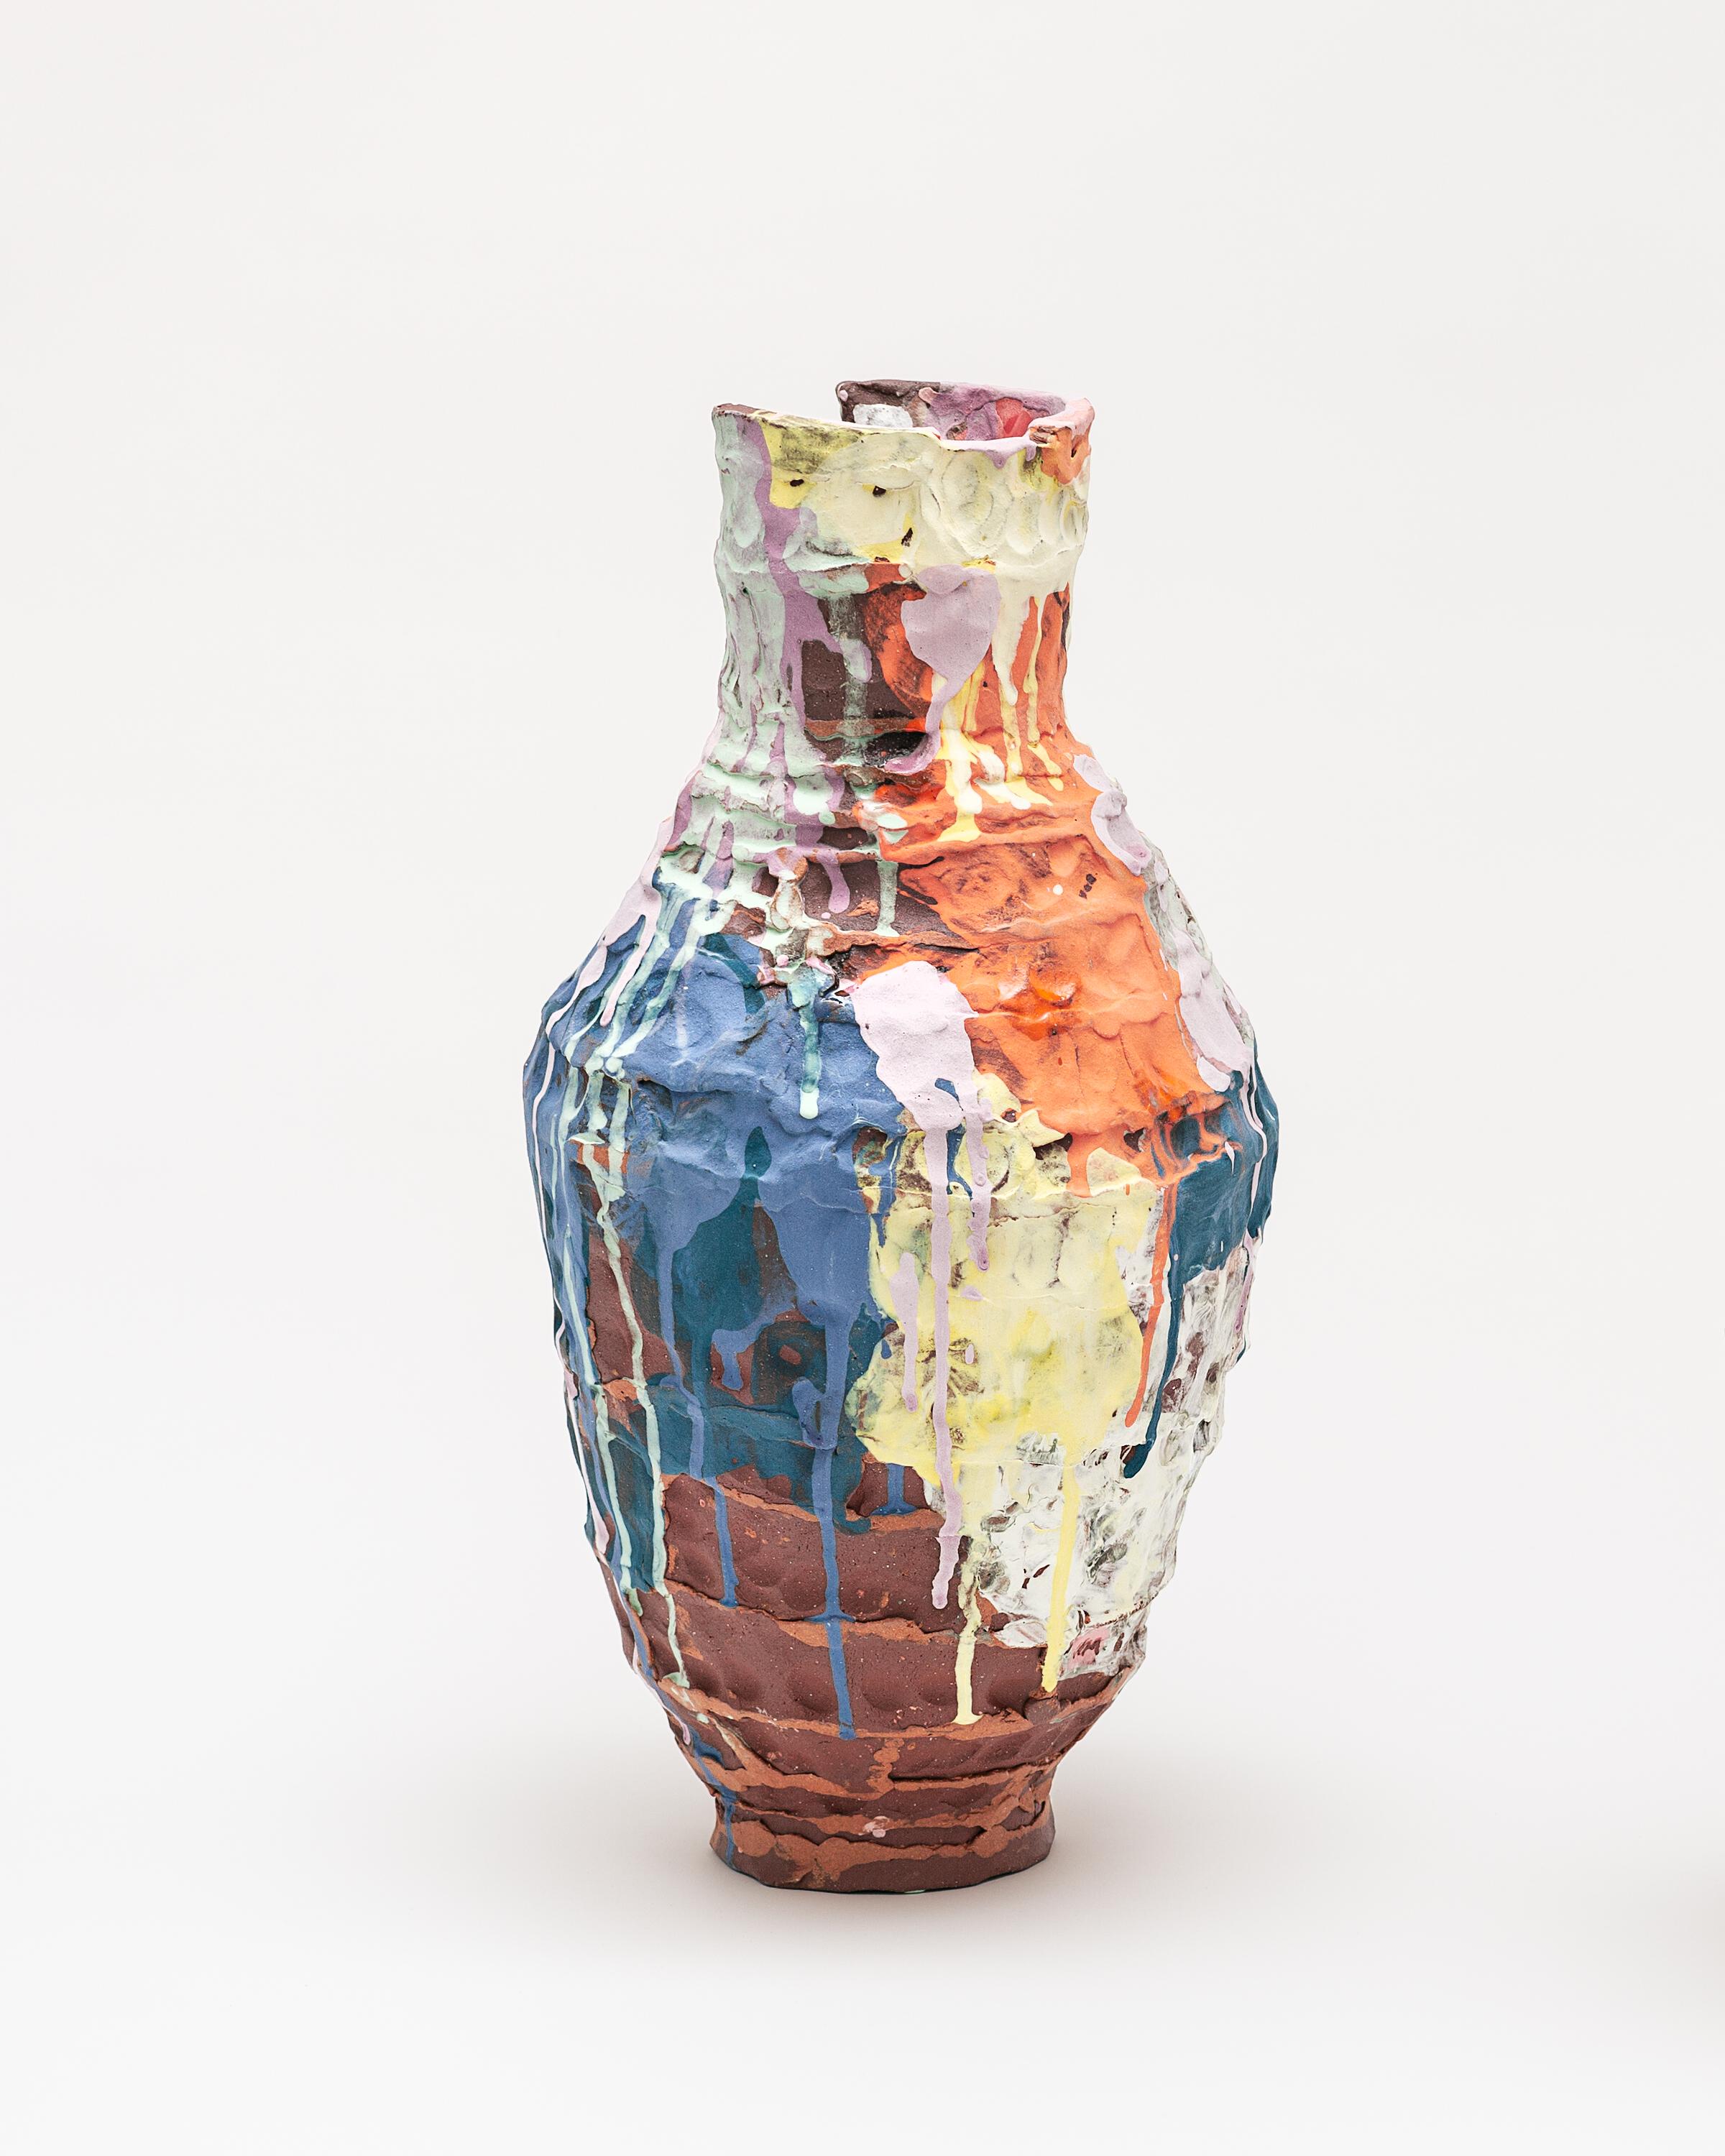 Placida-Vase von Elke Sada
Einzigartiges Stück
Abmessungen: B 22 x T 22 x H 44 cm
MATERIALIEN: roter Ton mit Rillen, farbige Schlicker, transparente Glasur.

Das Faszinierende und Auffallende an der Keramikkunst von Elke Sada ist nicht nur die